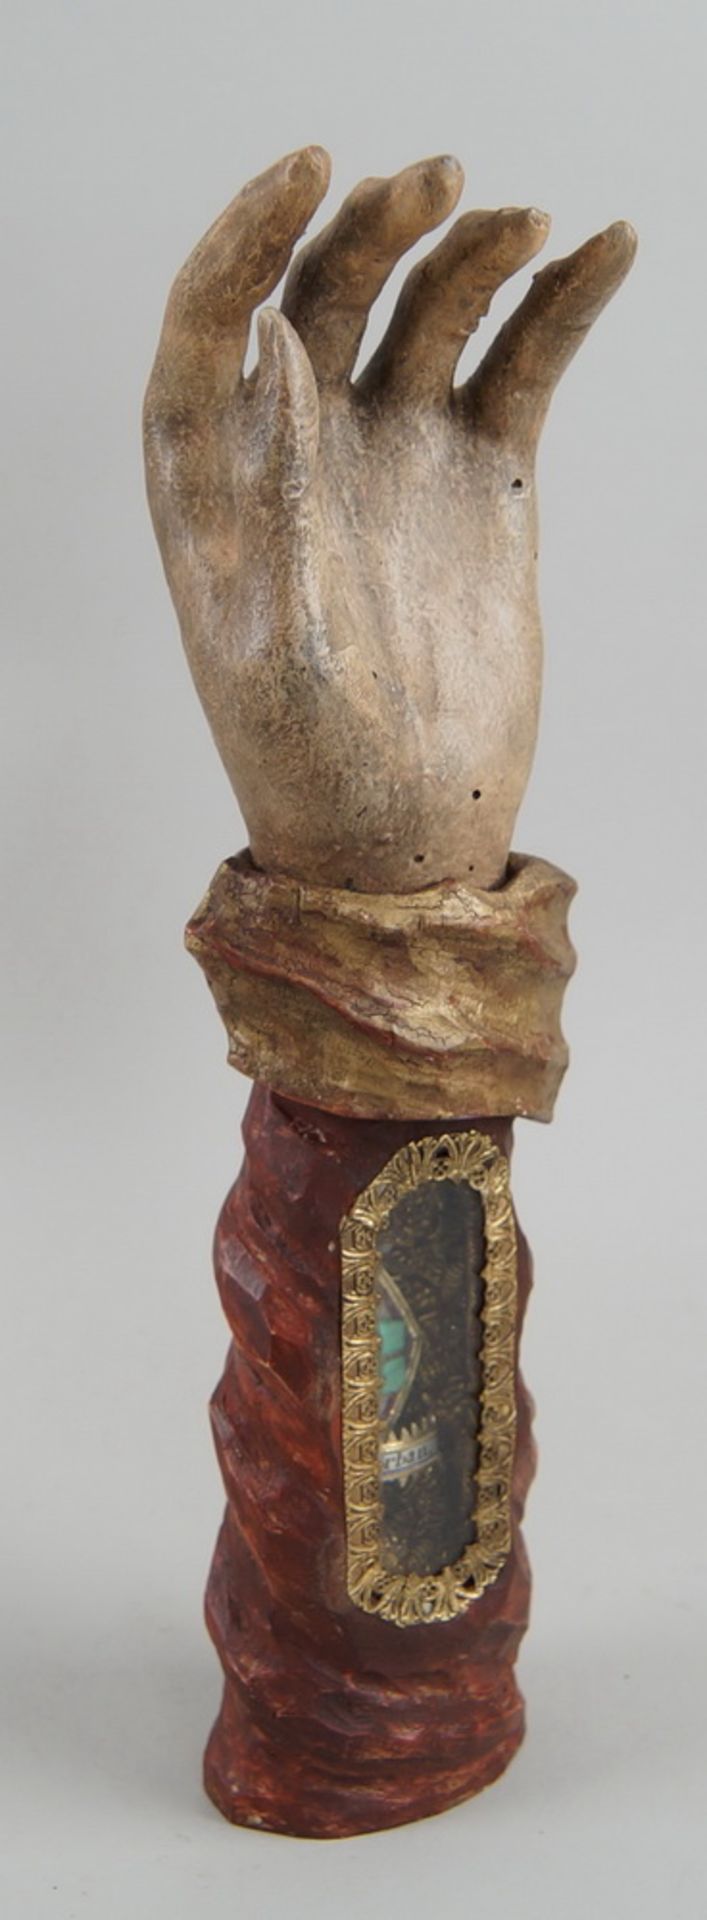 Grosse Reliquienhand, Holz geschnitzt und gefasst, Reliquie hinter Glas, St. Urban, H 31cm